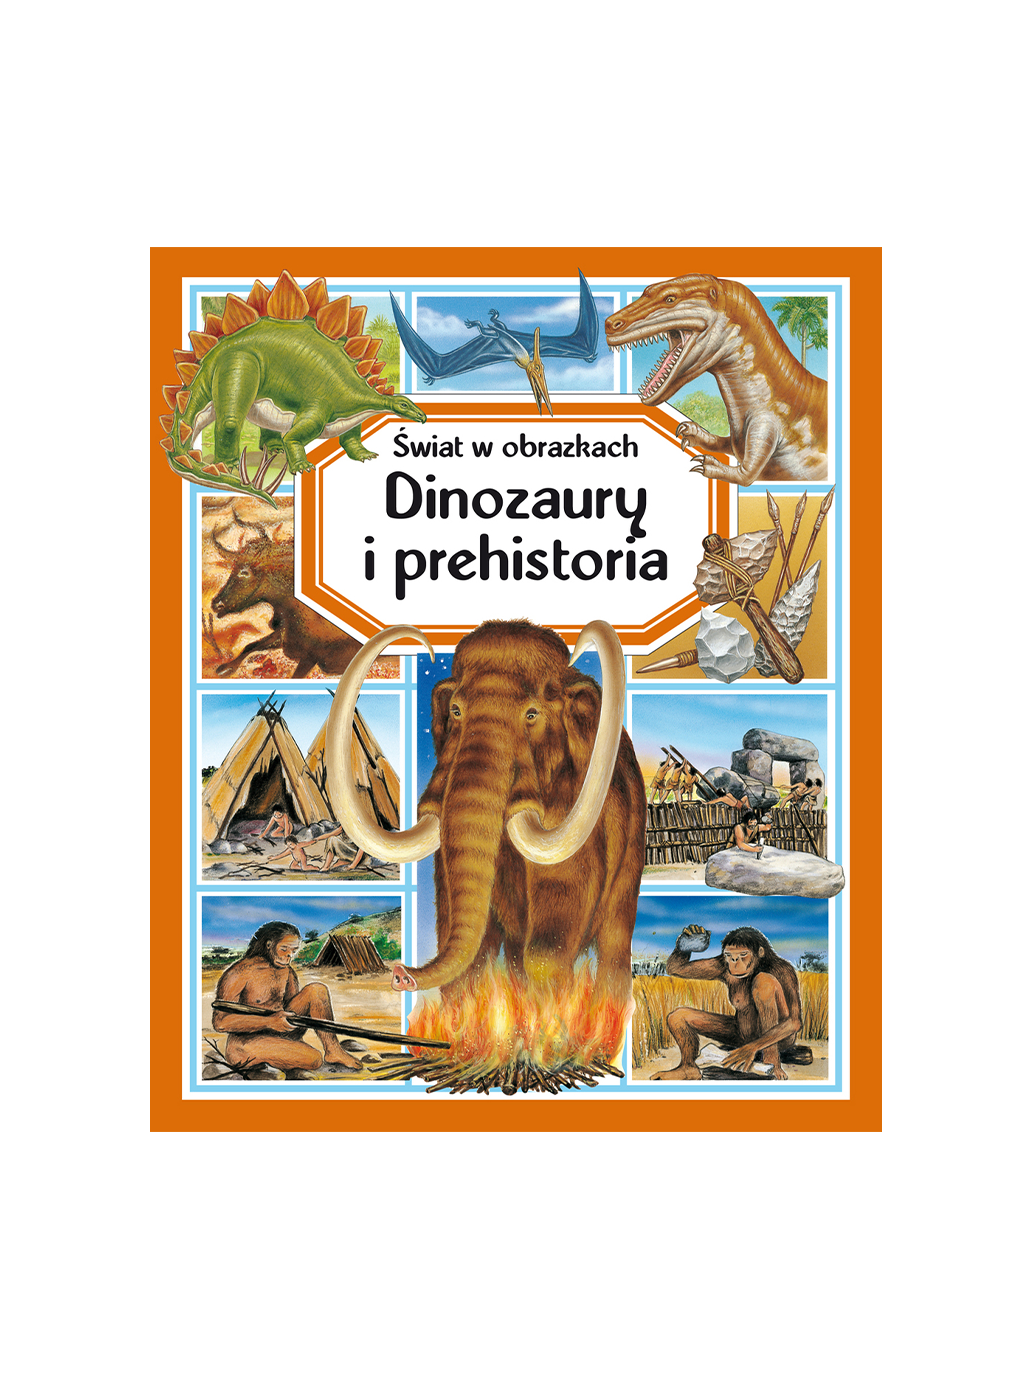 Die Welt in Bildern. Dinosaurier und Vorgeschichte